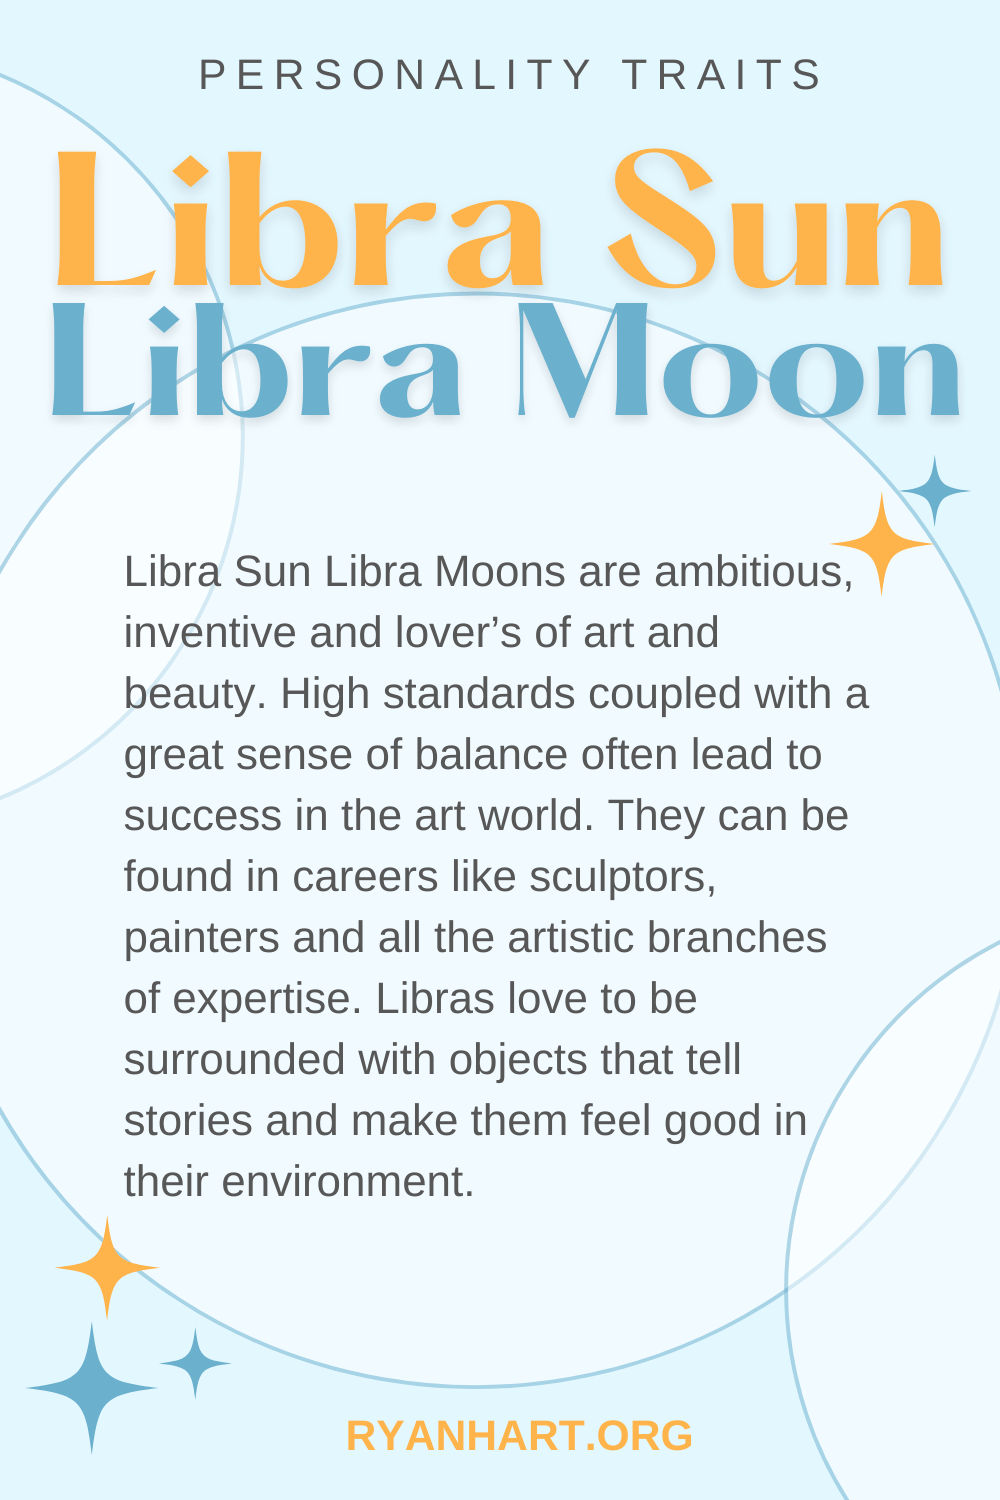 Libra Sun Libra Moon Description